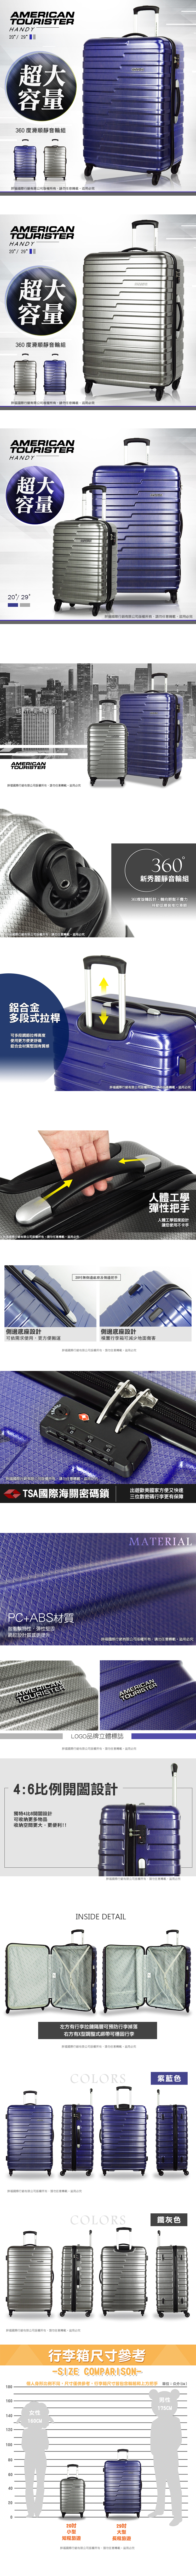 新秀麗 美國旅行者 行李箱 旅行箱 Handy 超大容量 輕量化29吋 BF9 (鐵灰色)